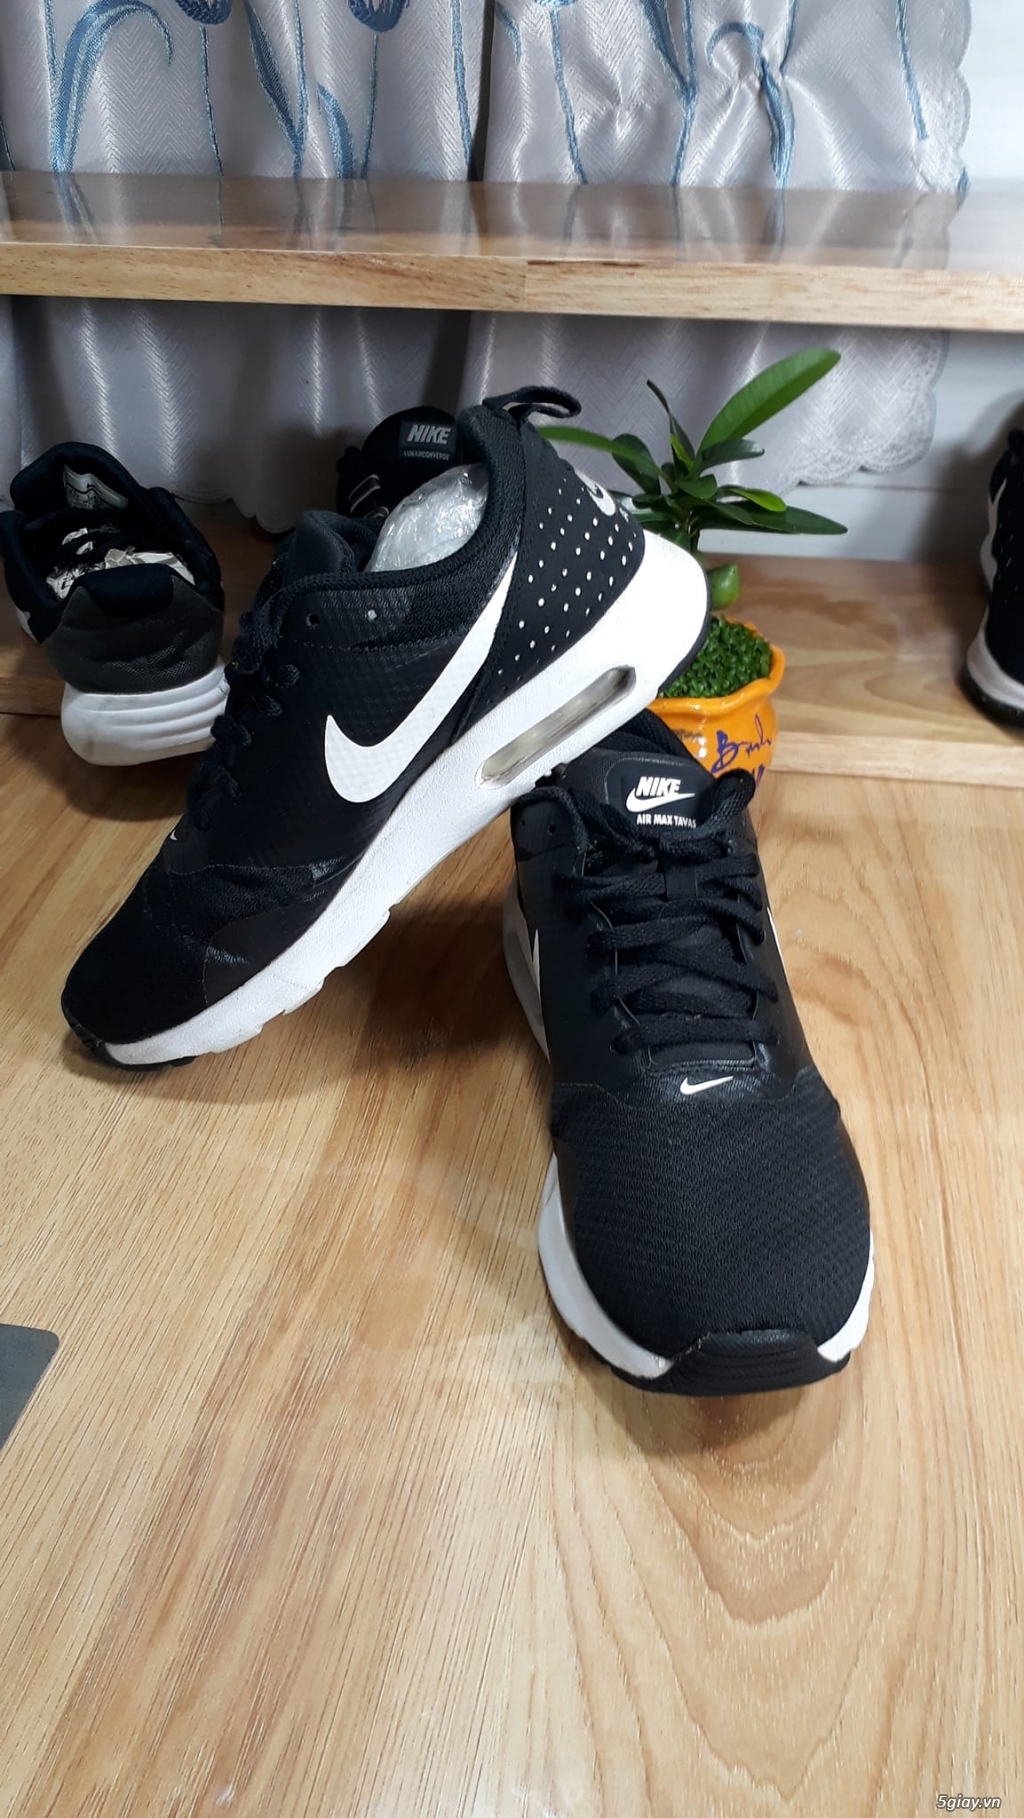 Giày Nike Tavas size 38VN 2hand chính hãng - Giày cũ Mỹ Thái Q7